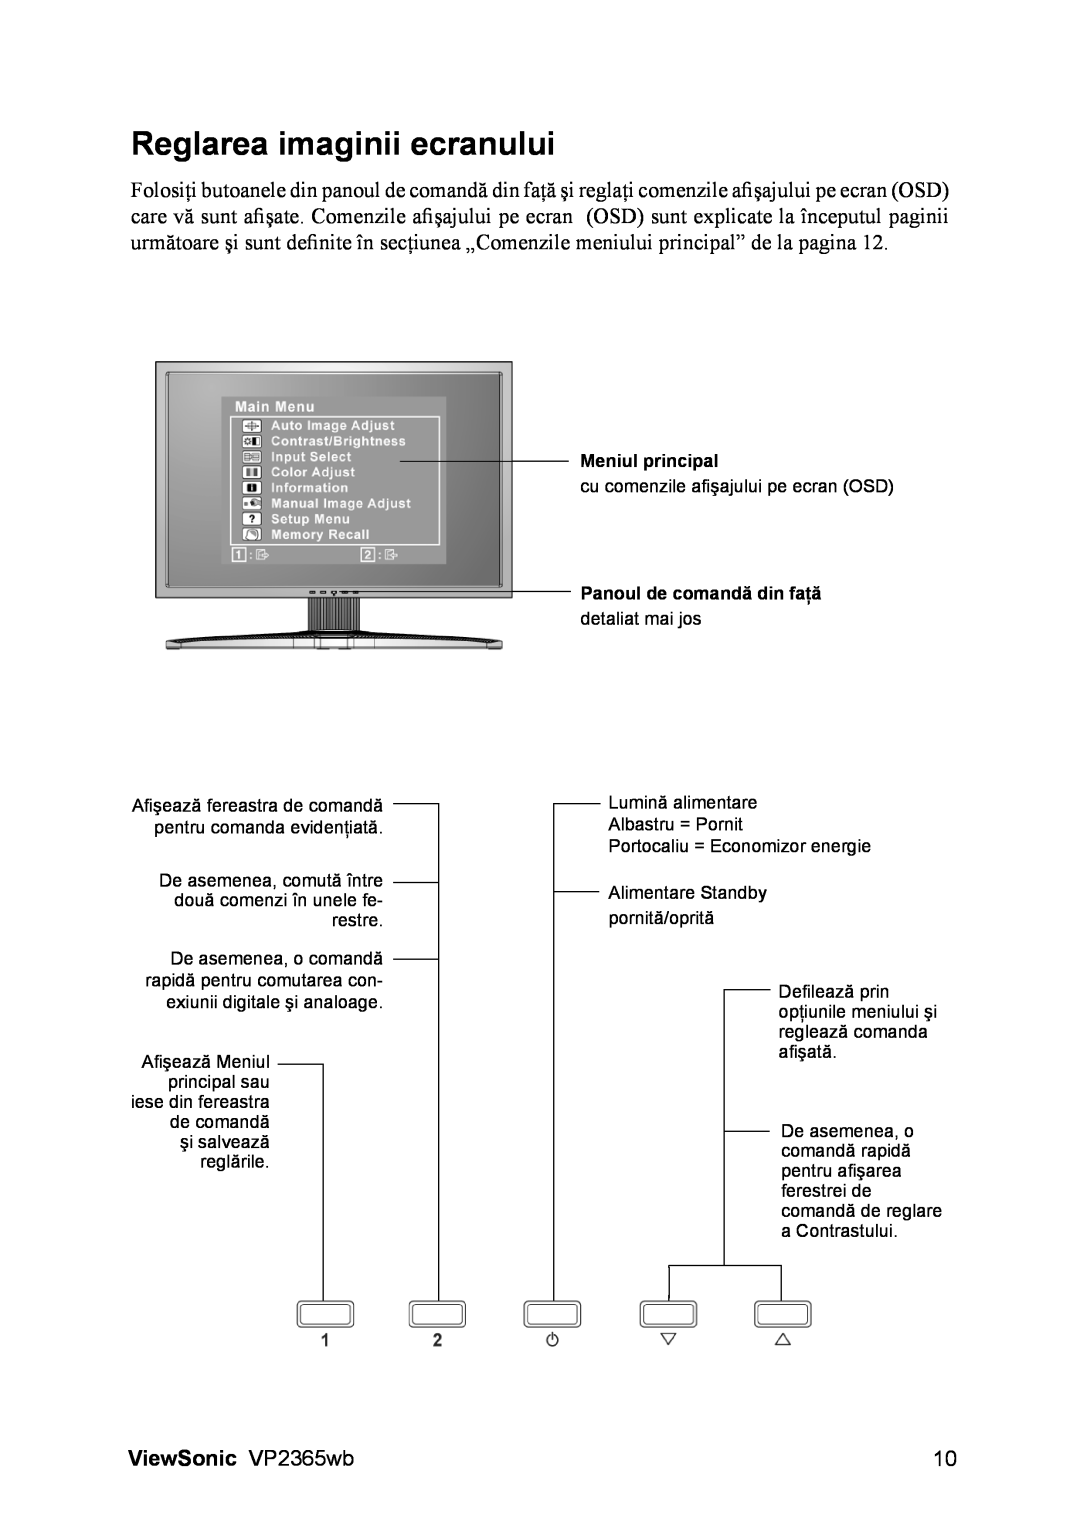 ViewSonic VS12637 manual Reglarea imaginii ecranului, ViewSonic VP2365wb, Meniul principal, Panoul de comandă din faţă 